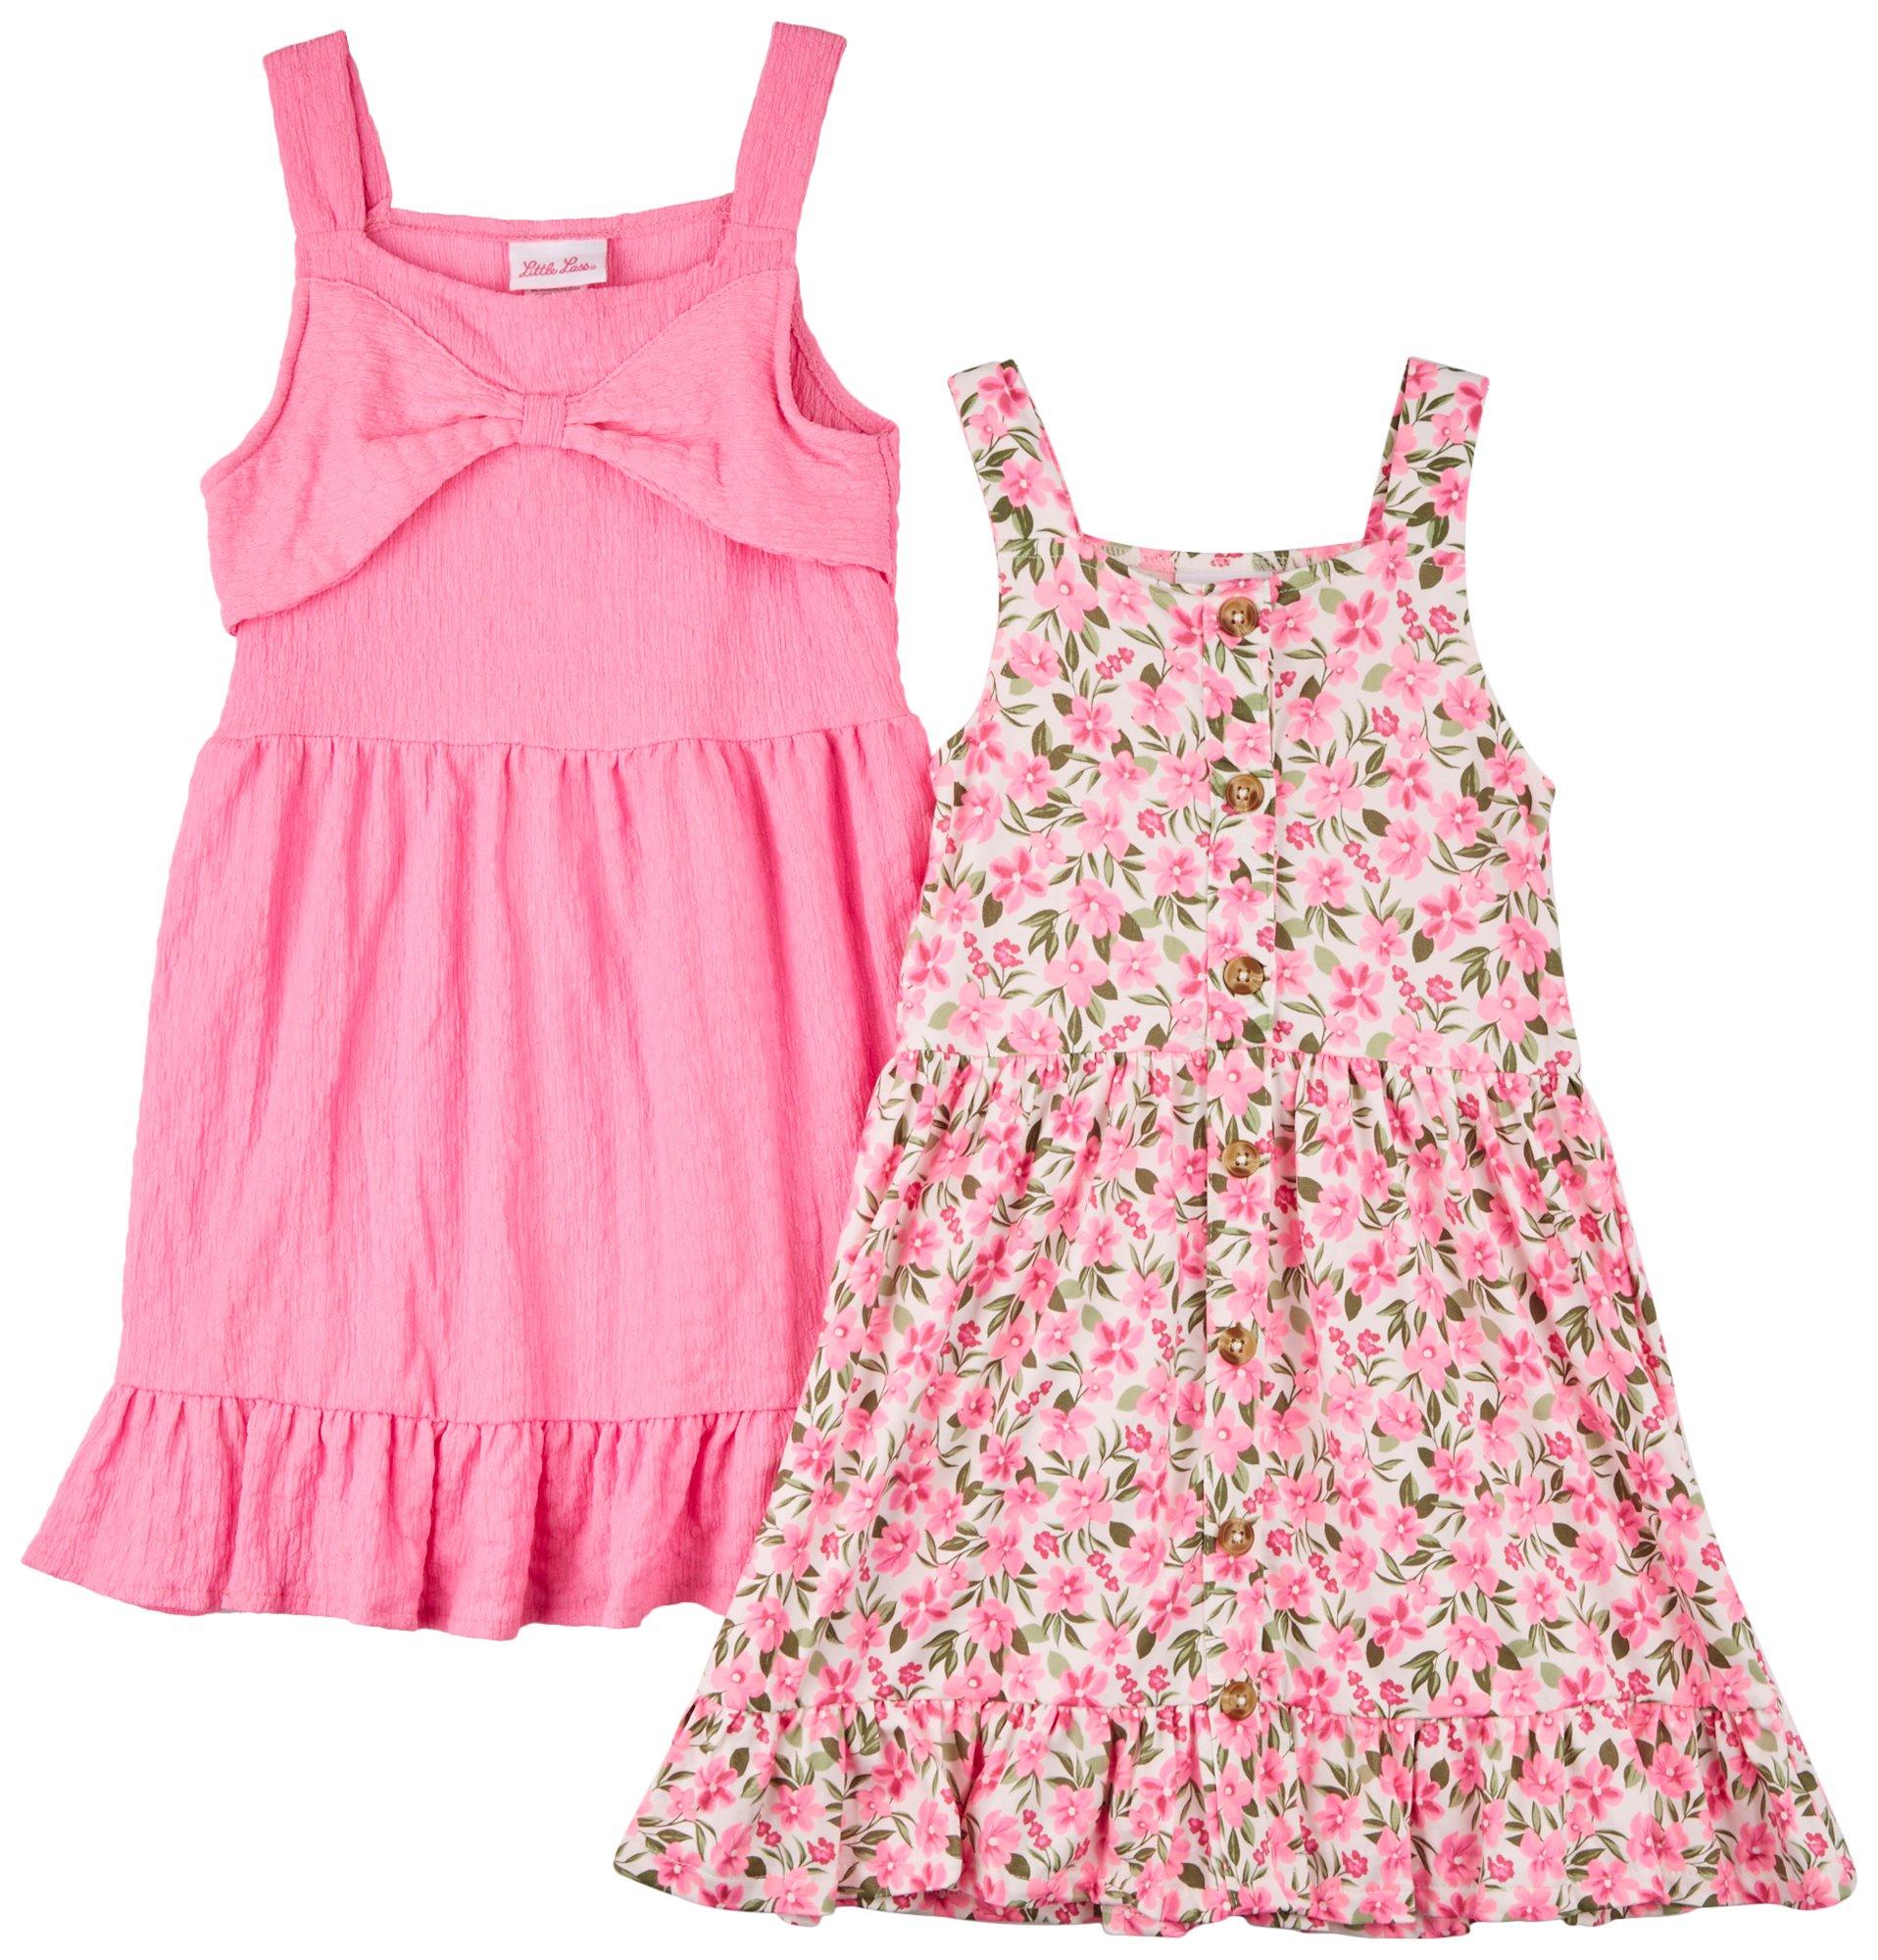 Little Girls 2 Pc. Sleeveless Dress Set